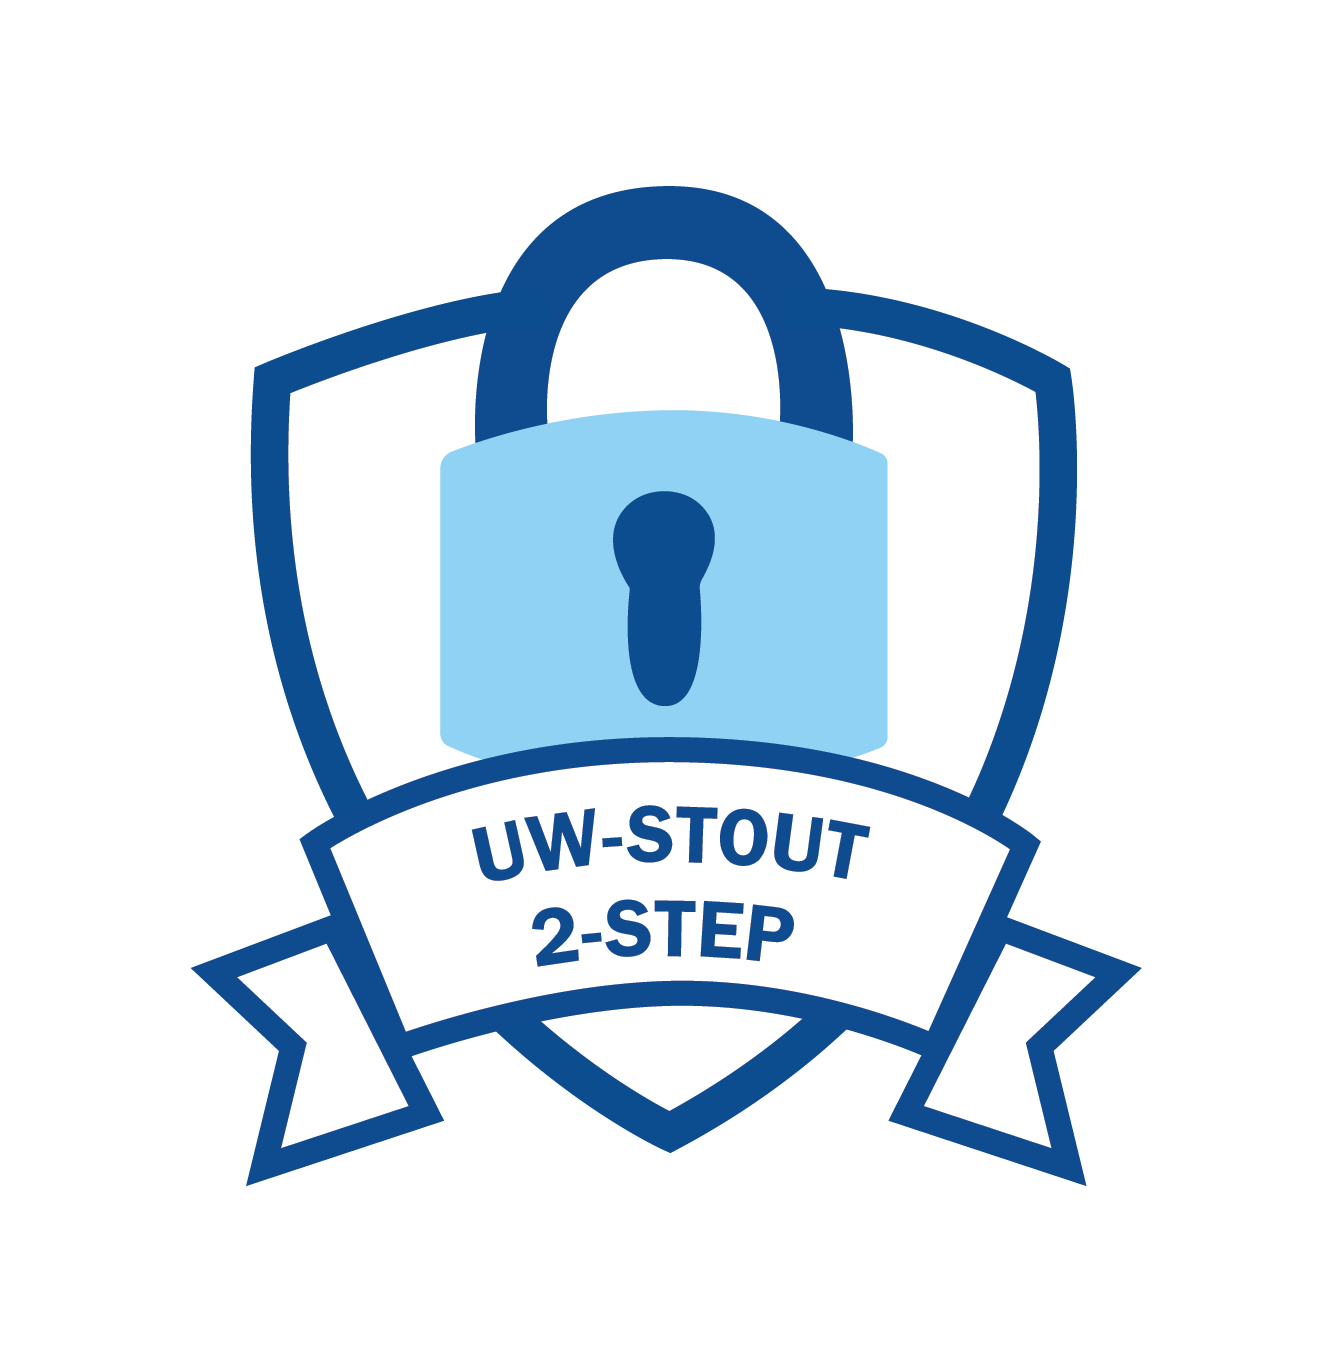 Stout 2-step logo